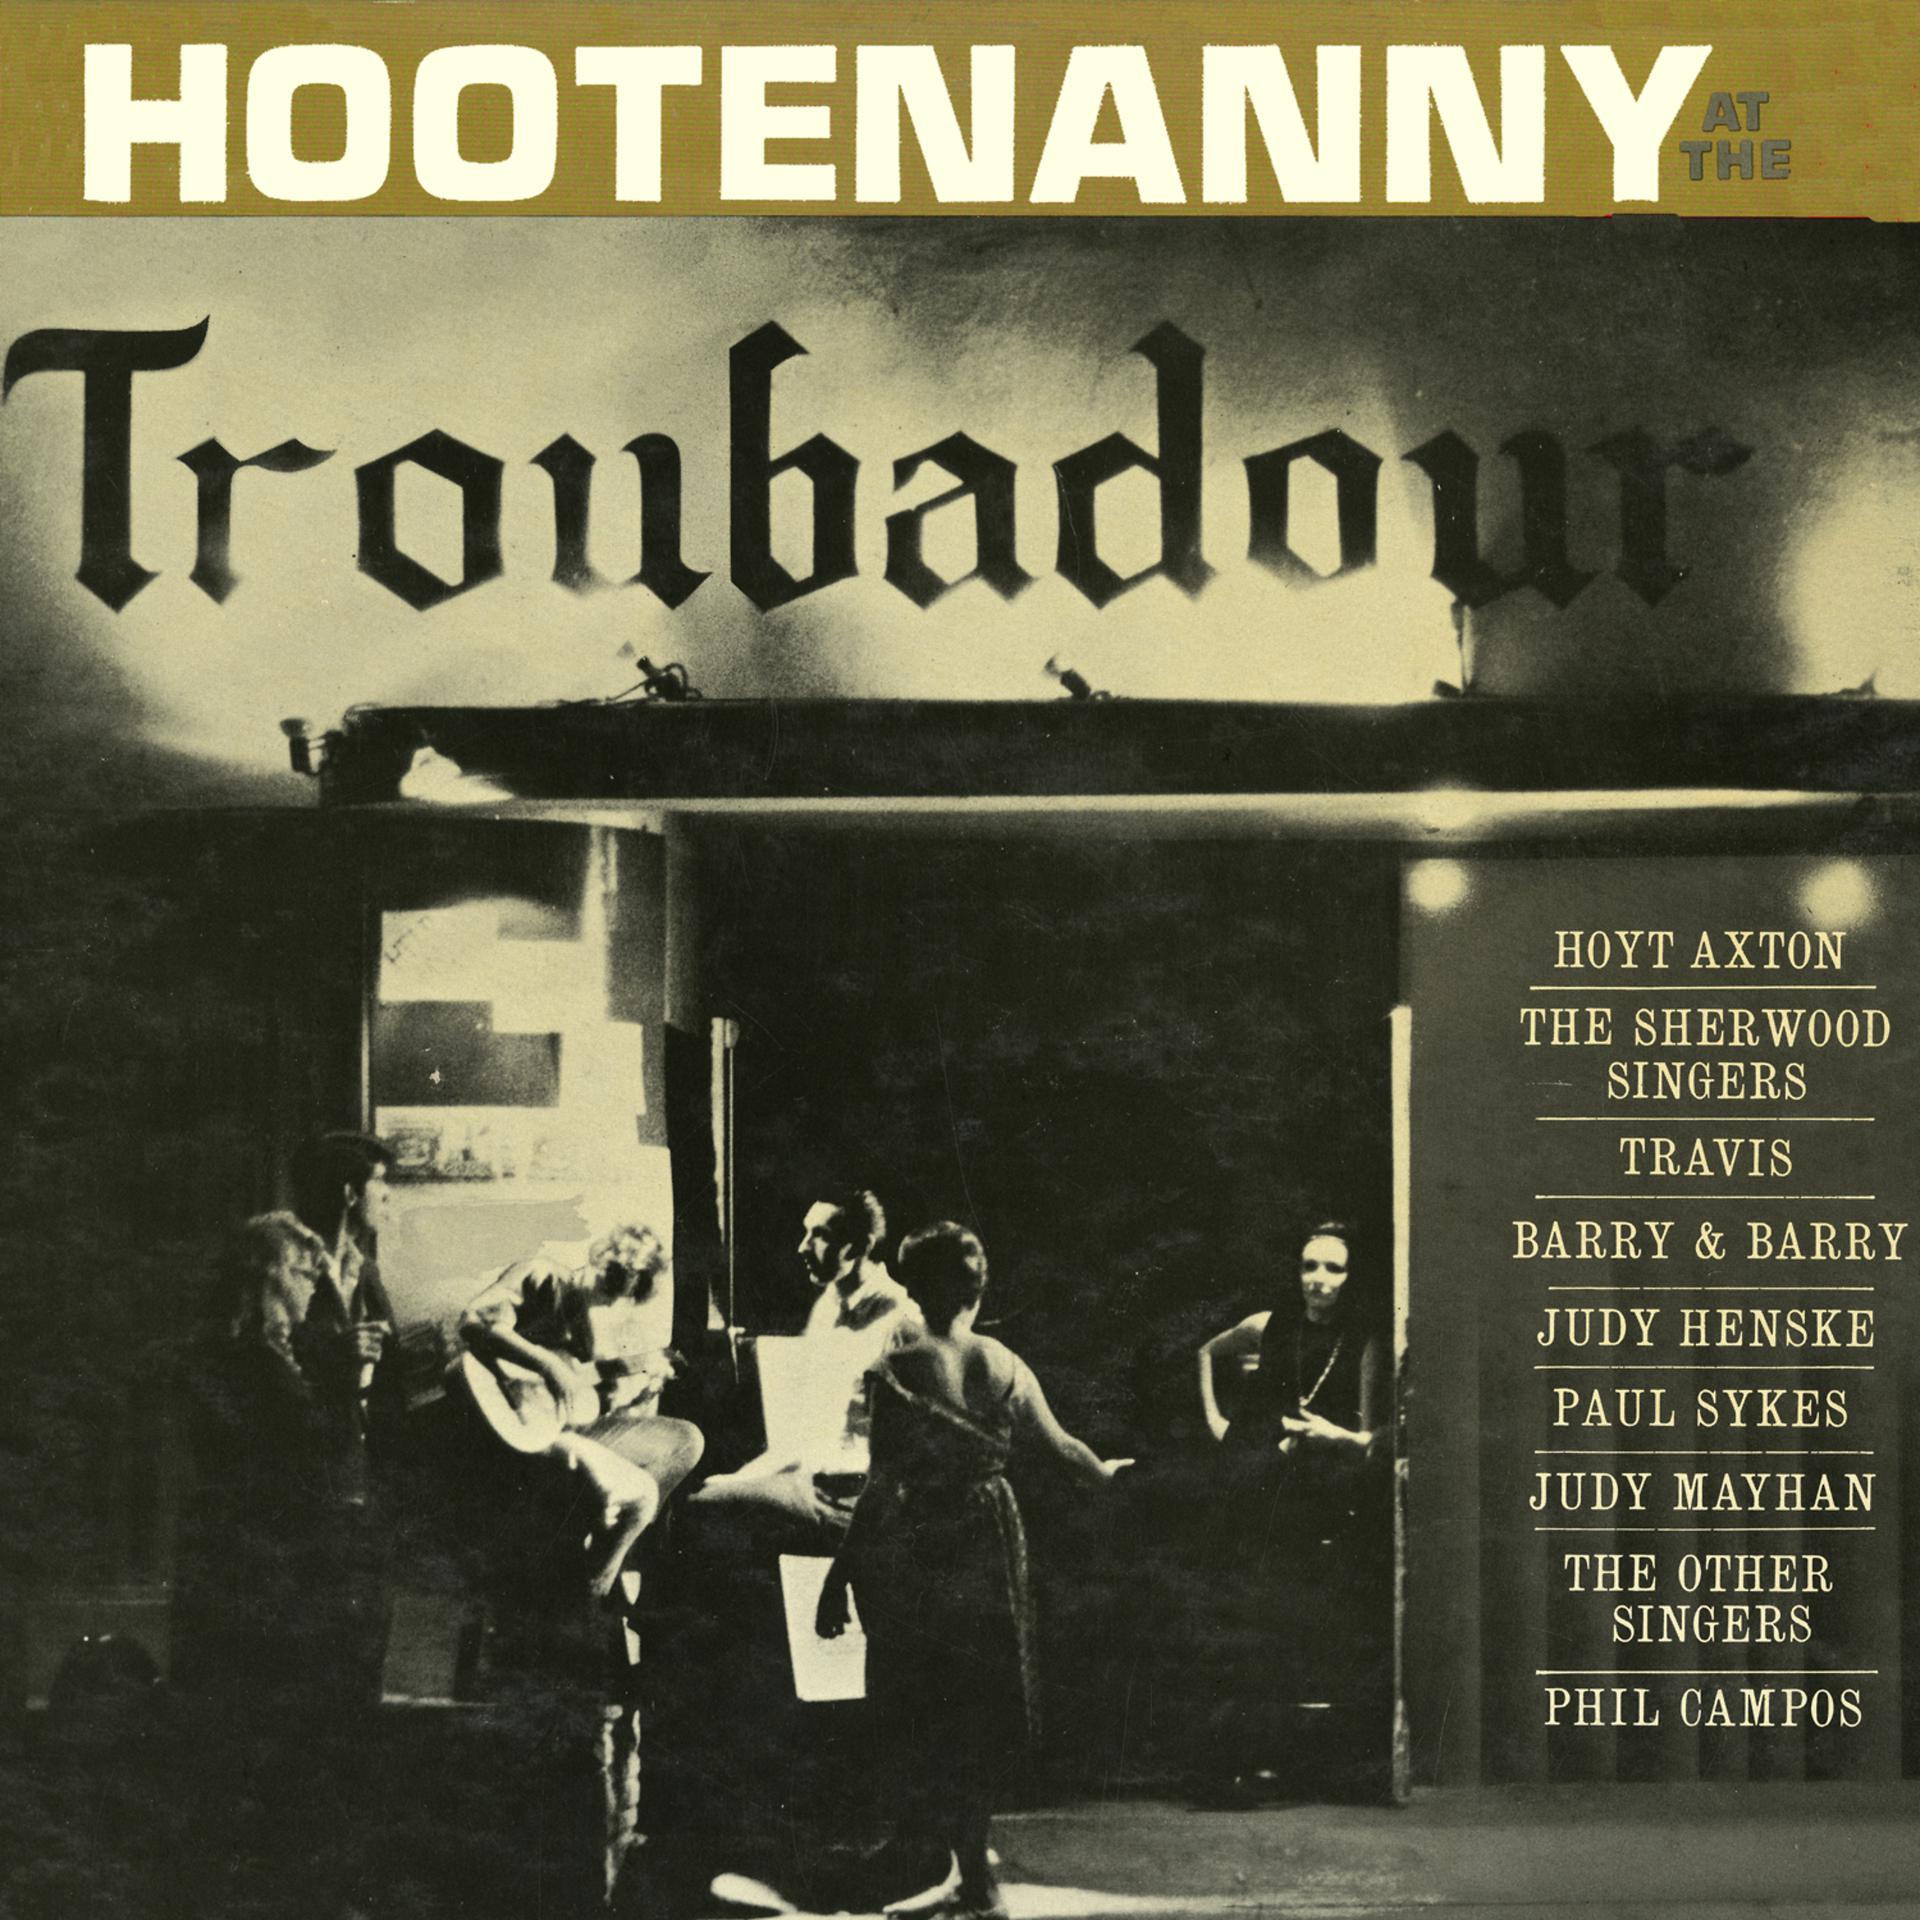 Постер альбома Hootenanny at the Troubadour